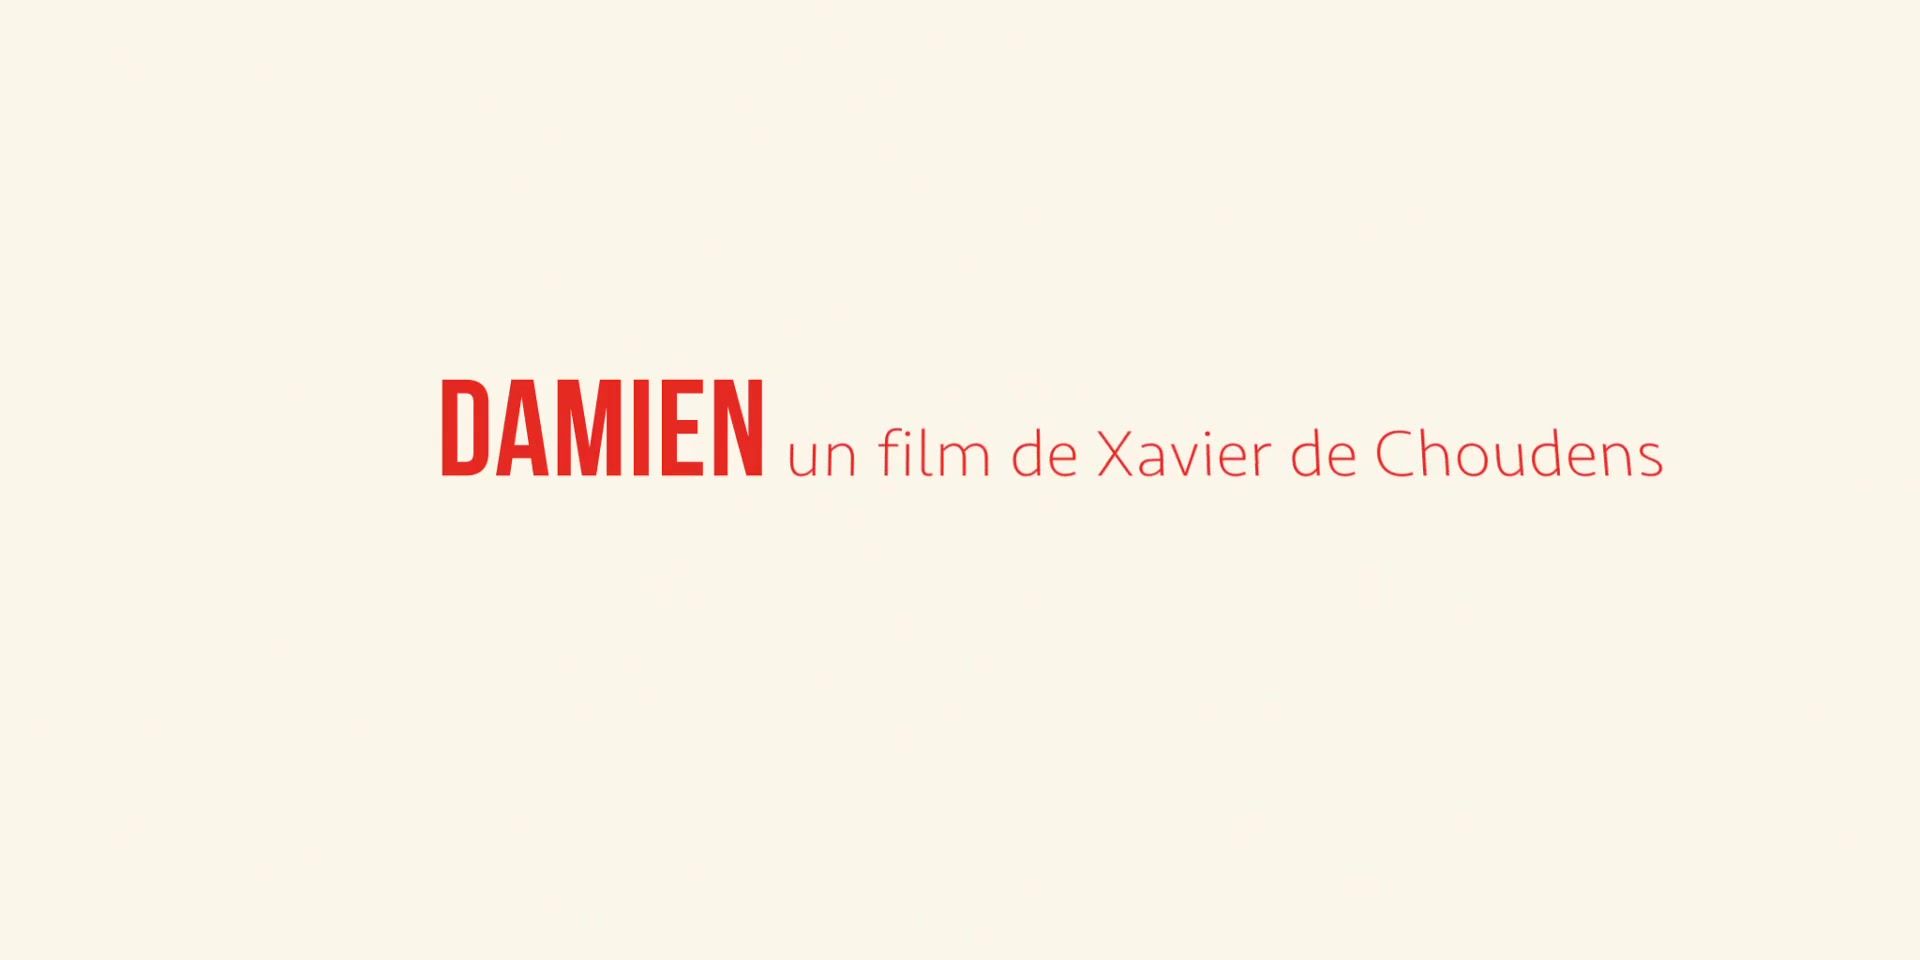 Trannies Claire Chust nude - Damien veut changer le monde (2019) Gang Bang